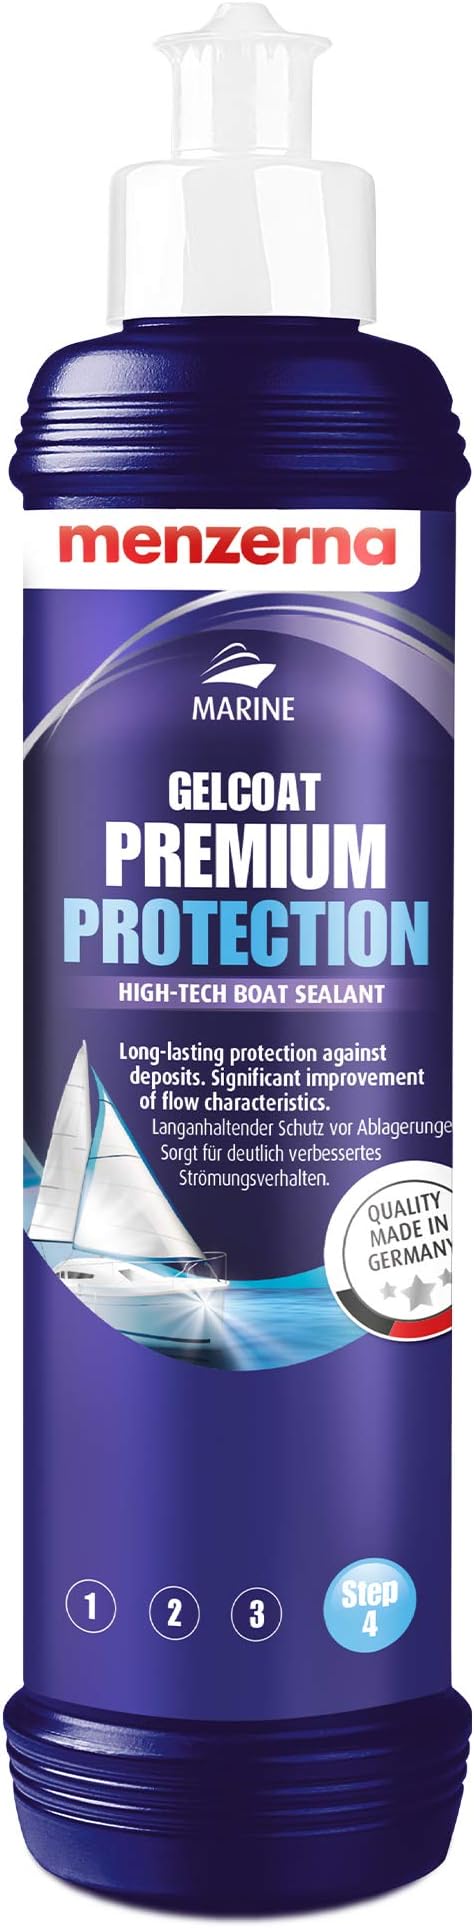 MENZERNA - Gelcoat Premium Protection